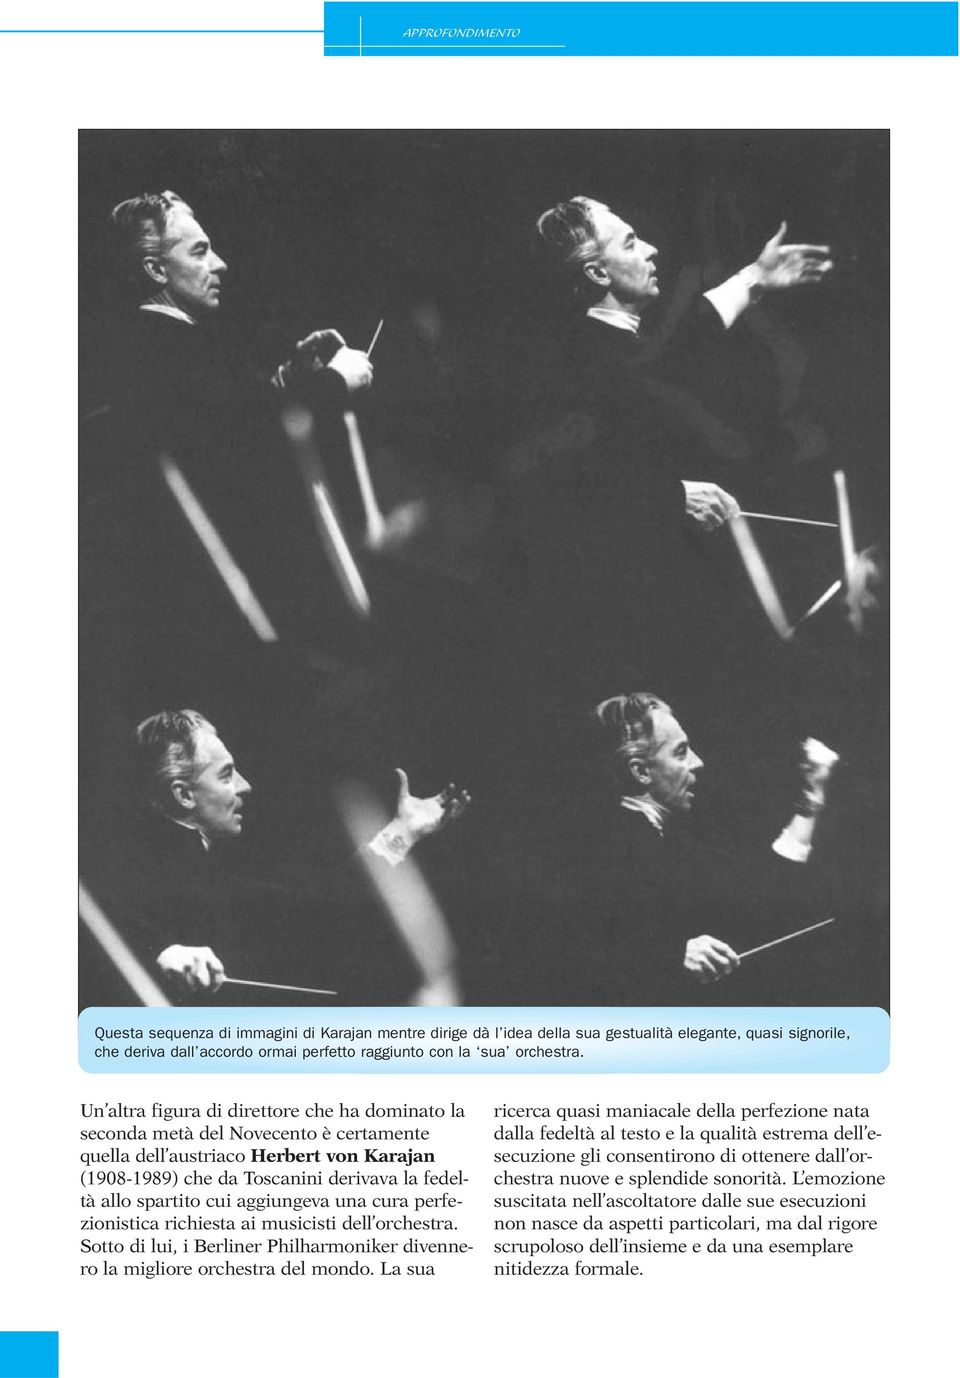 aggiungeva una cura perfezionistica richiesta ai musicisti dell orchestra. Sotto di lui, i Berliner Philharmoniker divennero la migliore orchestra del mondo.